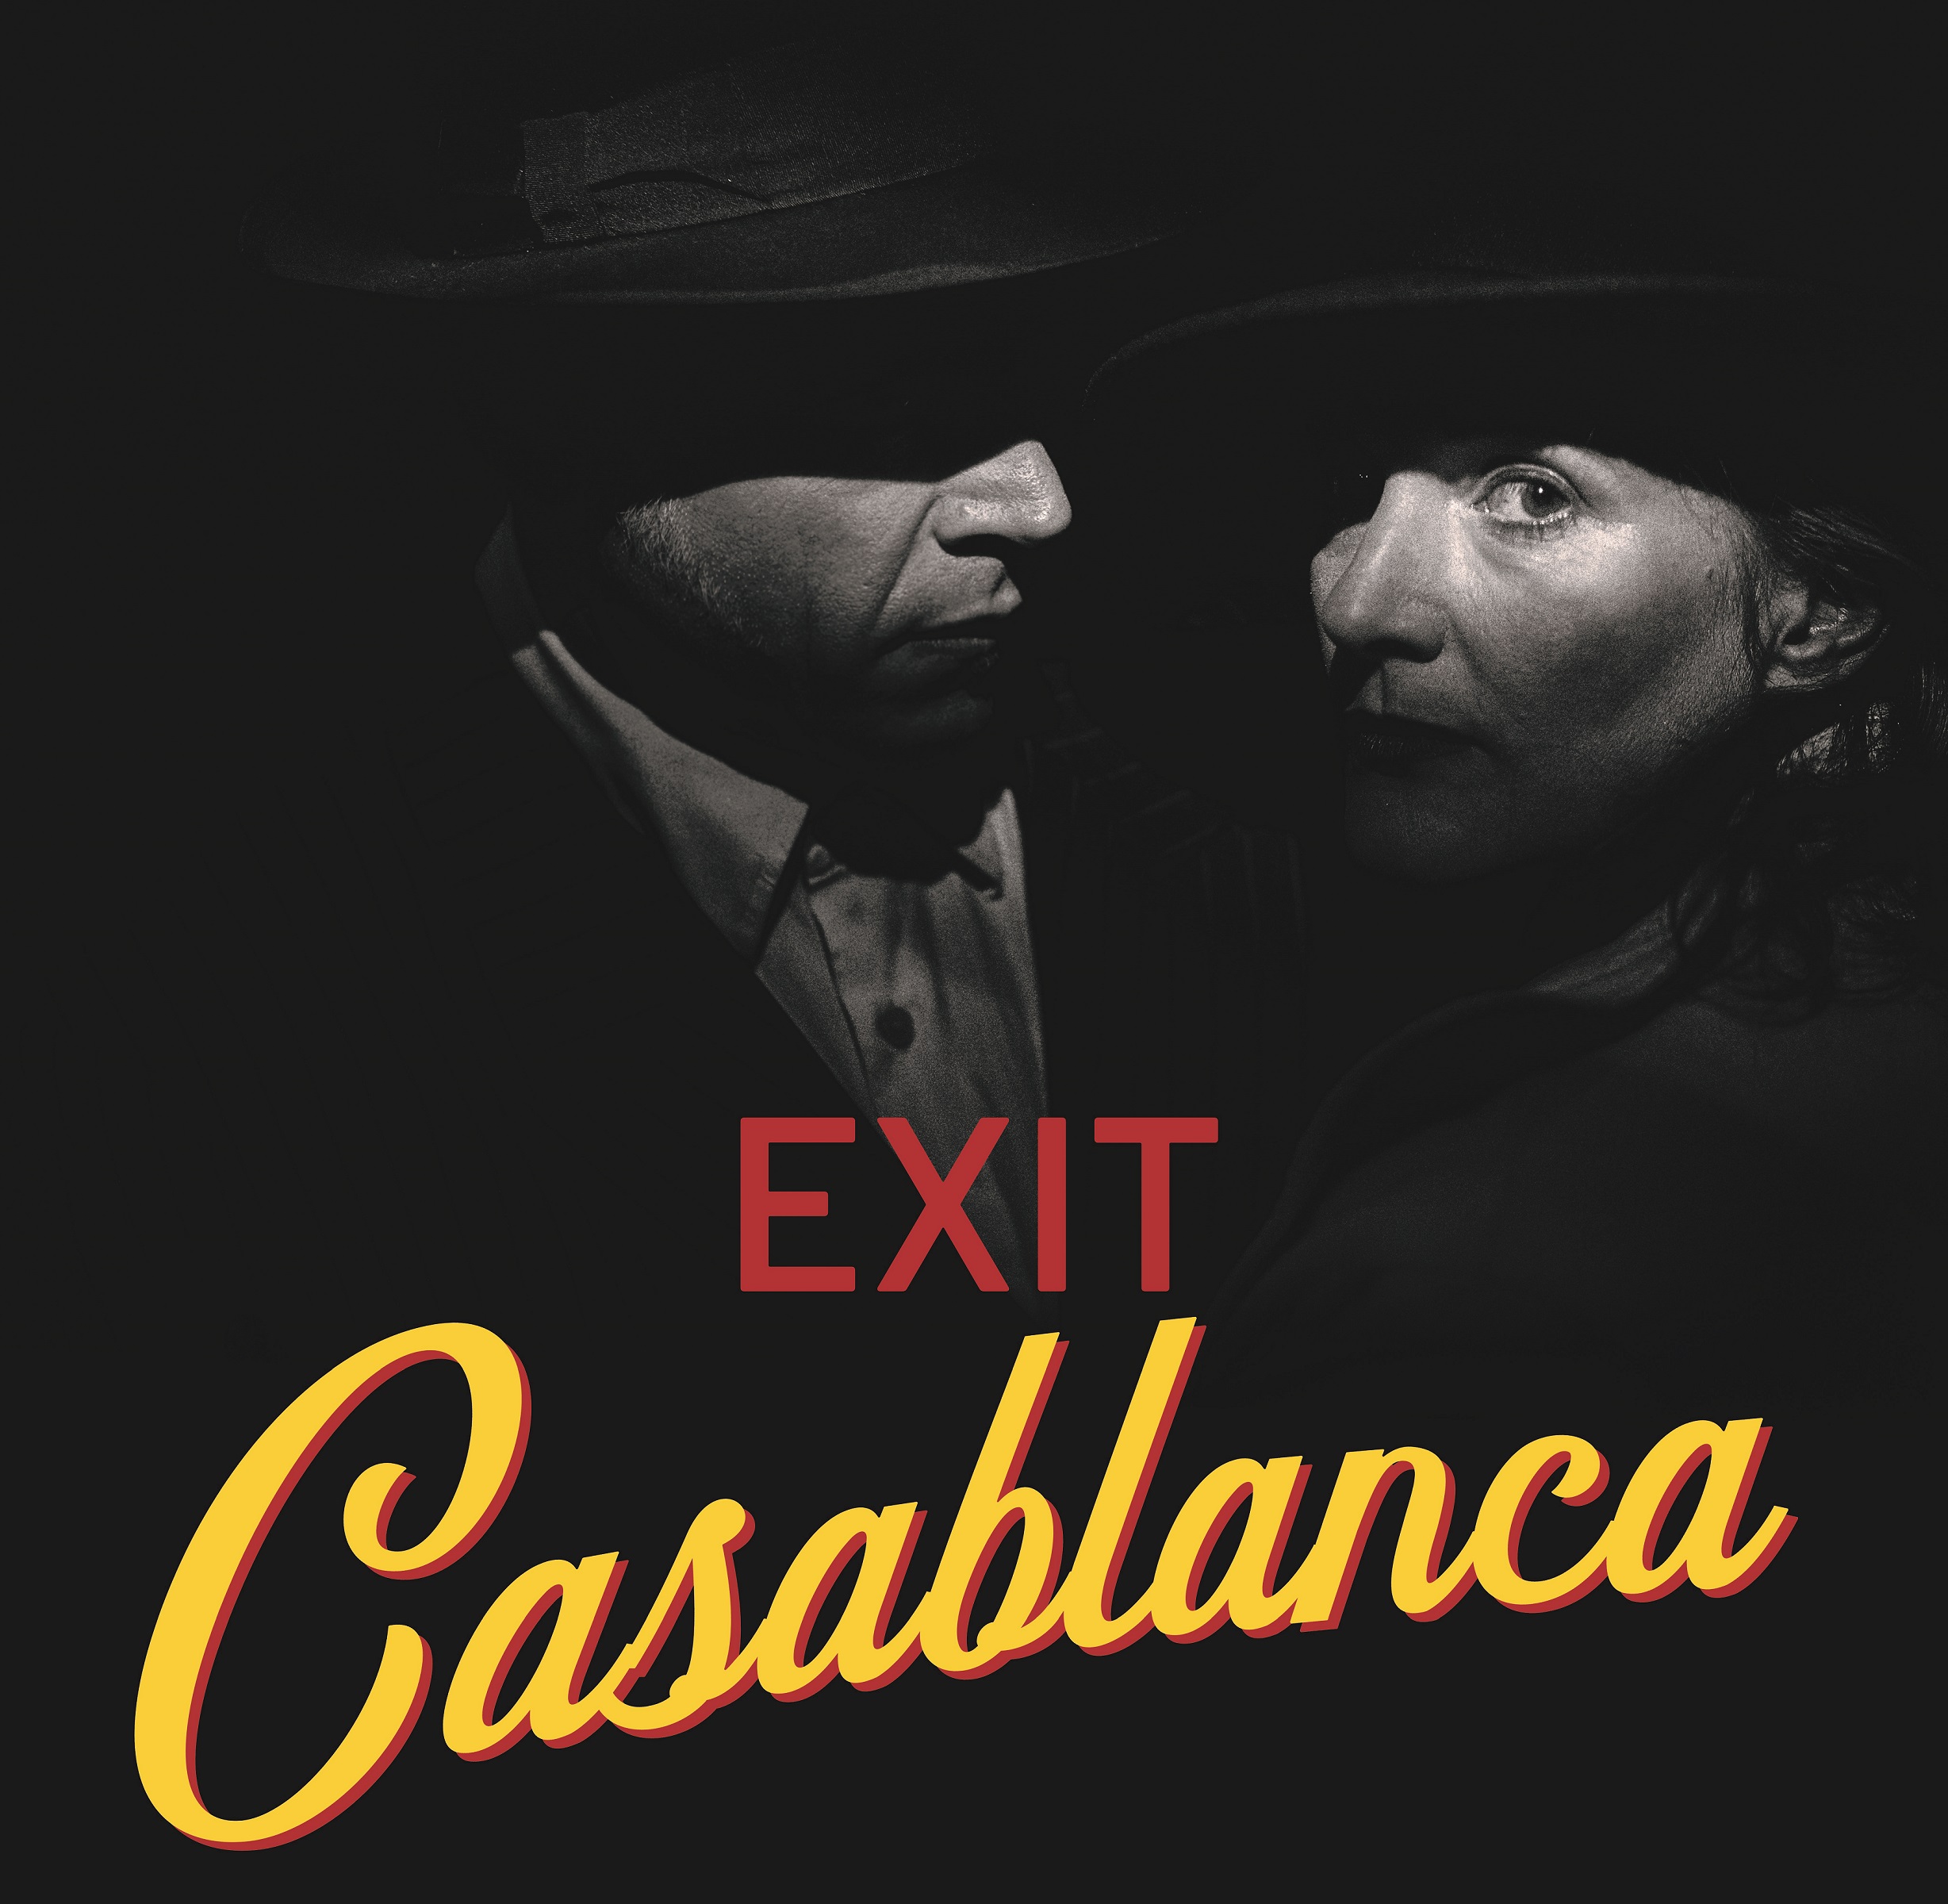 Plakat Exit casablanca 